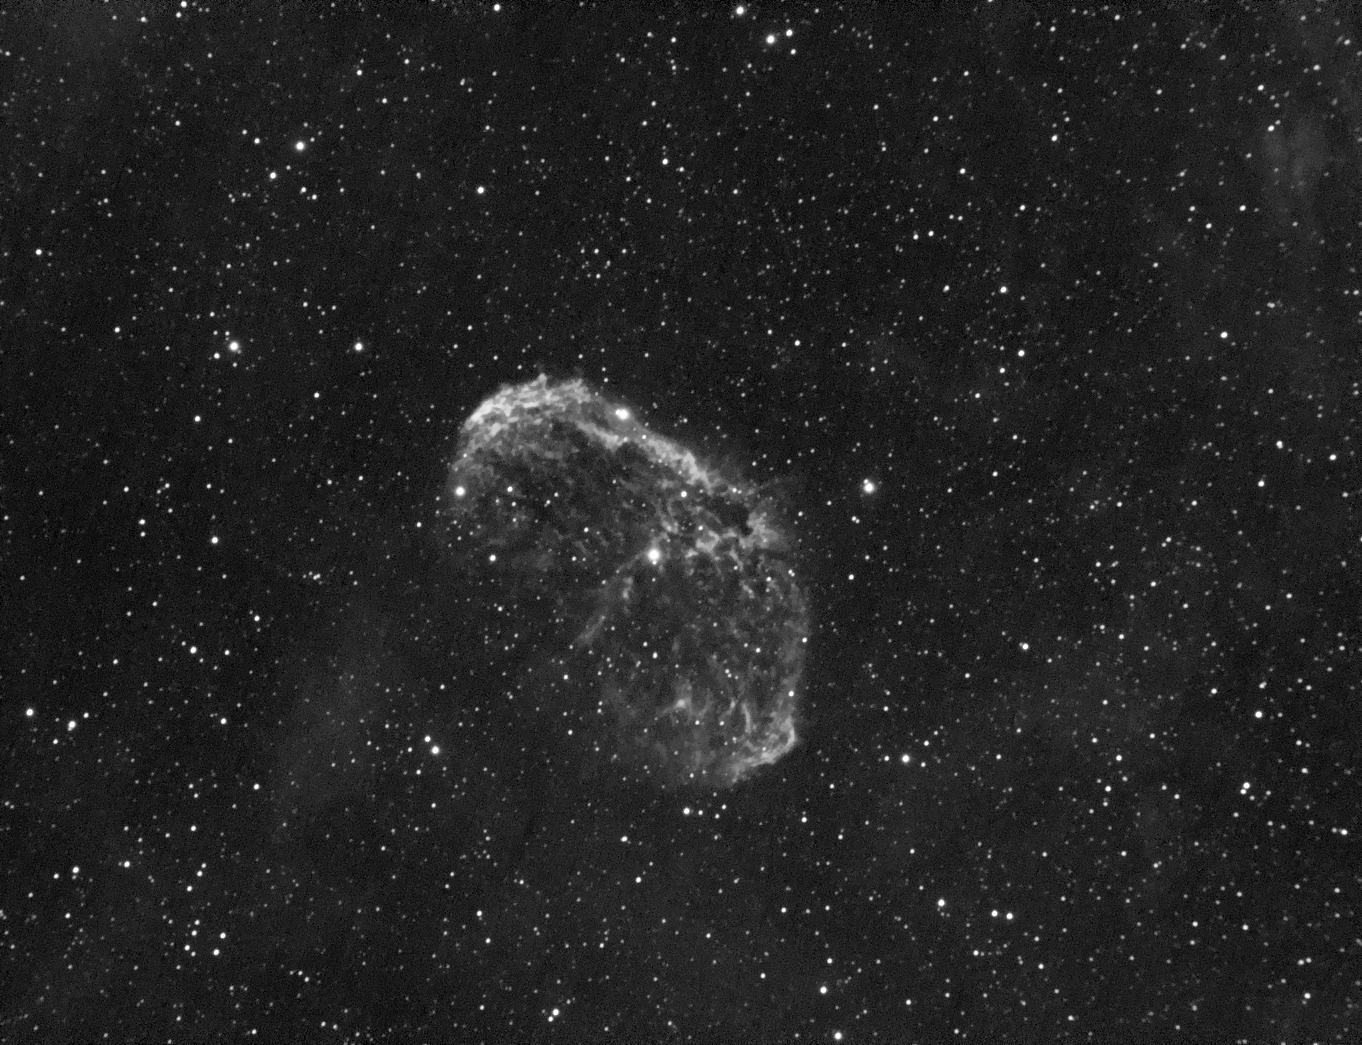 NGC-6888_Ha-25x240s-b1_v2.jpg